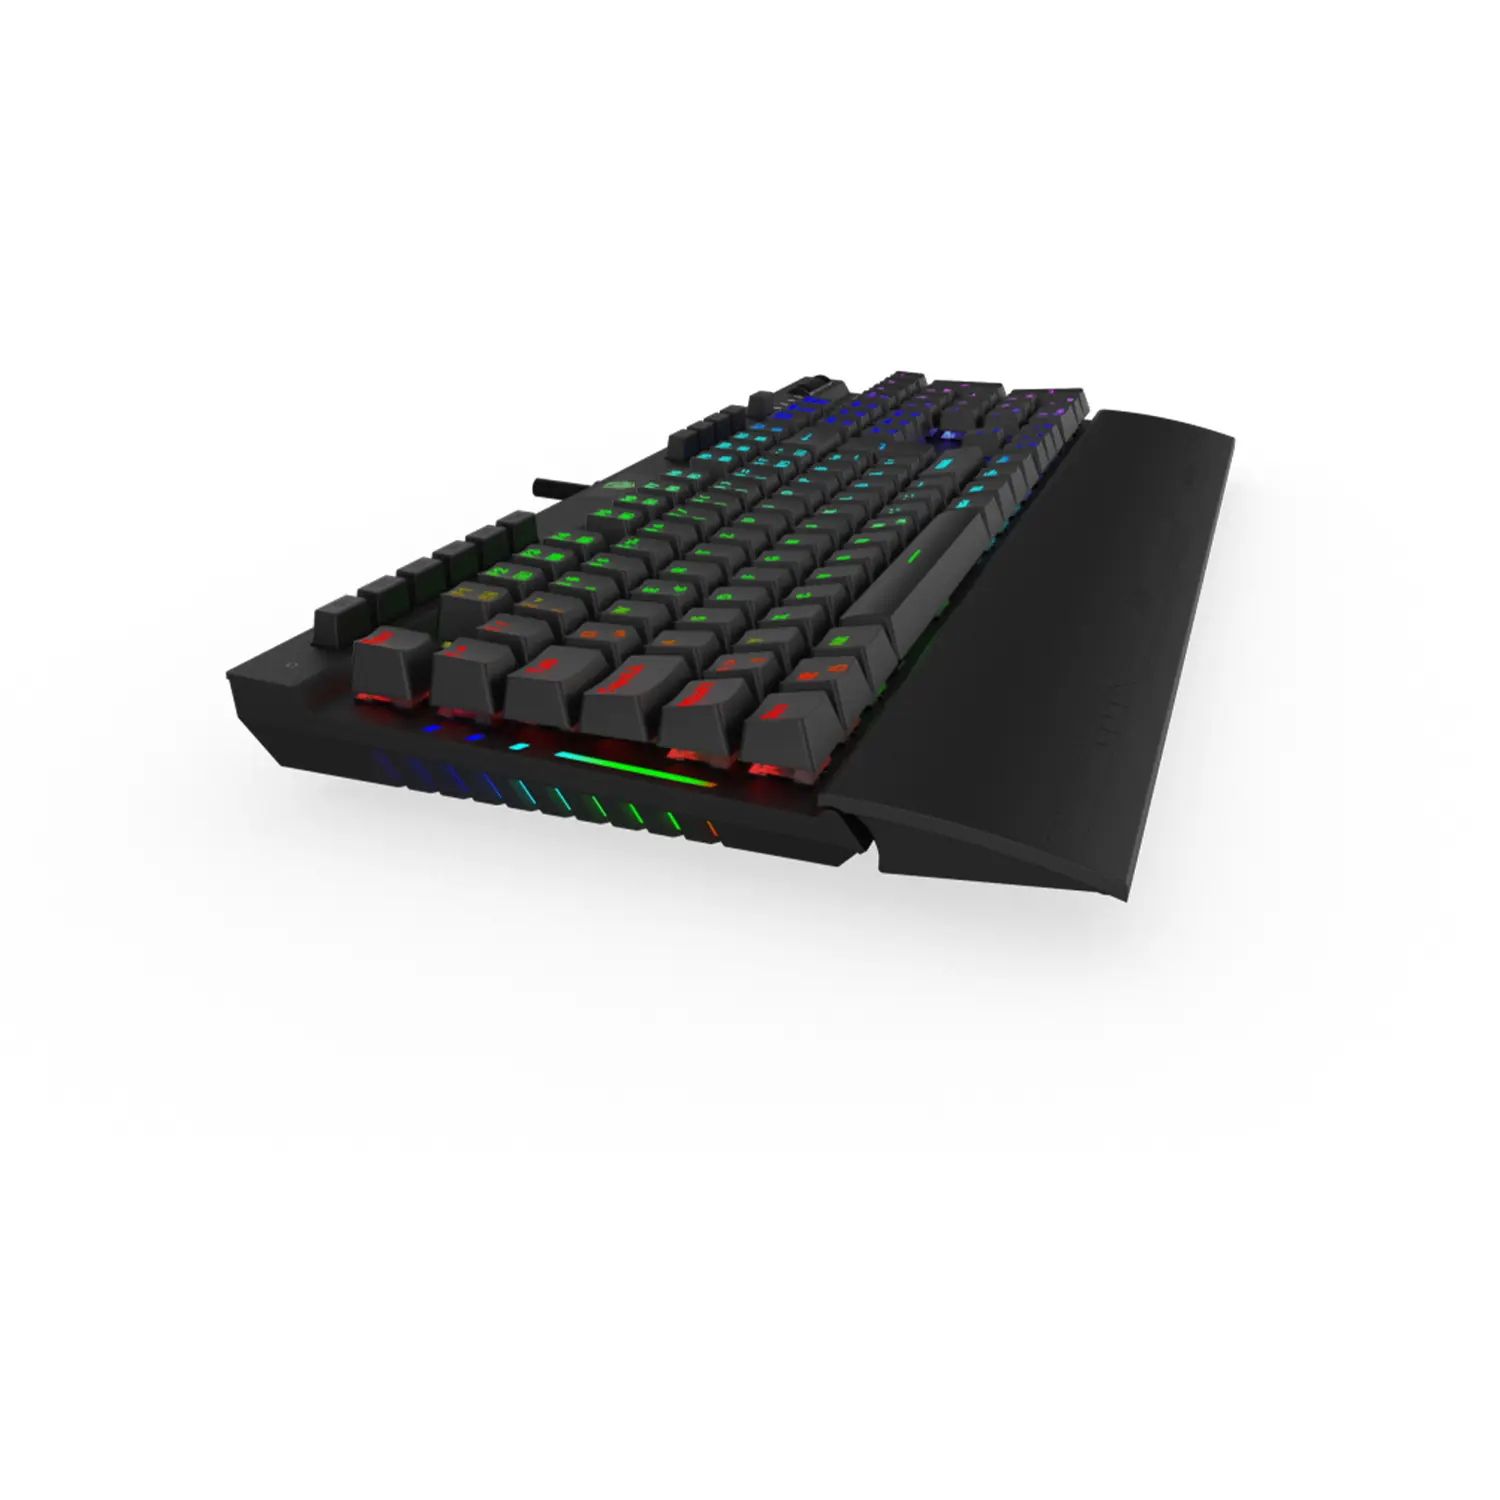 Pusat K3 Pro Gaming Keyboard 18 RGB Light Modes and 4 Player RGB Light Modes Mechanical Keyboard